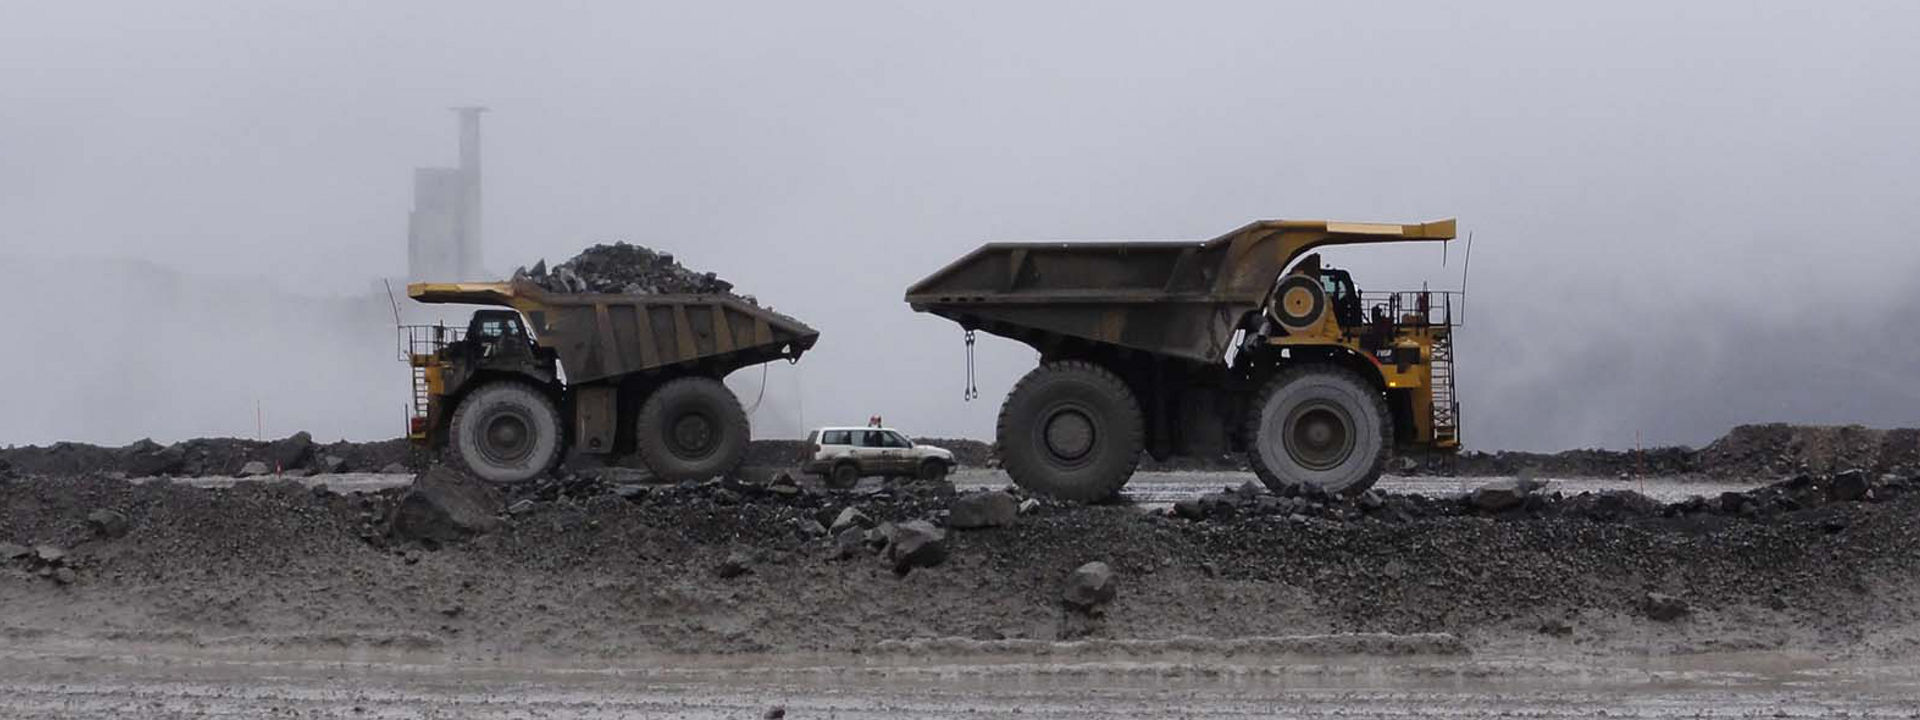 Cuatro vehículos todoterreno equipados con neumáticos Bridgestone trabajando en una mina a cielo abierto